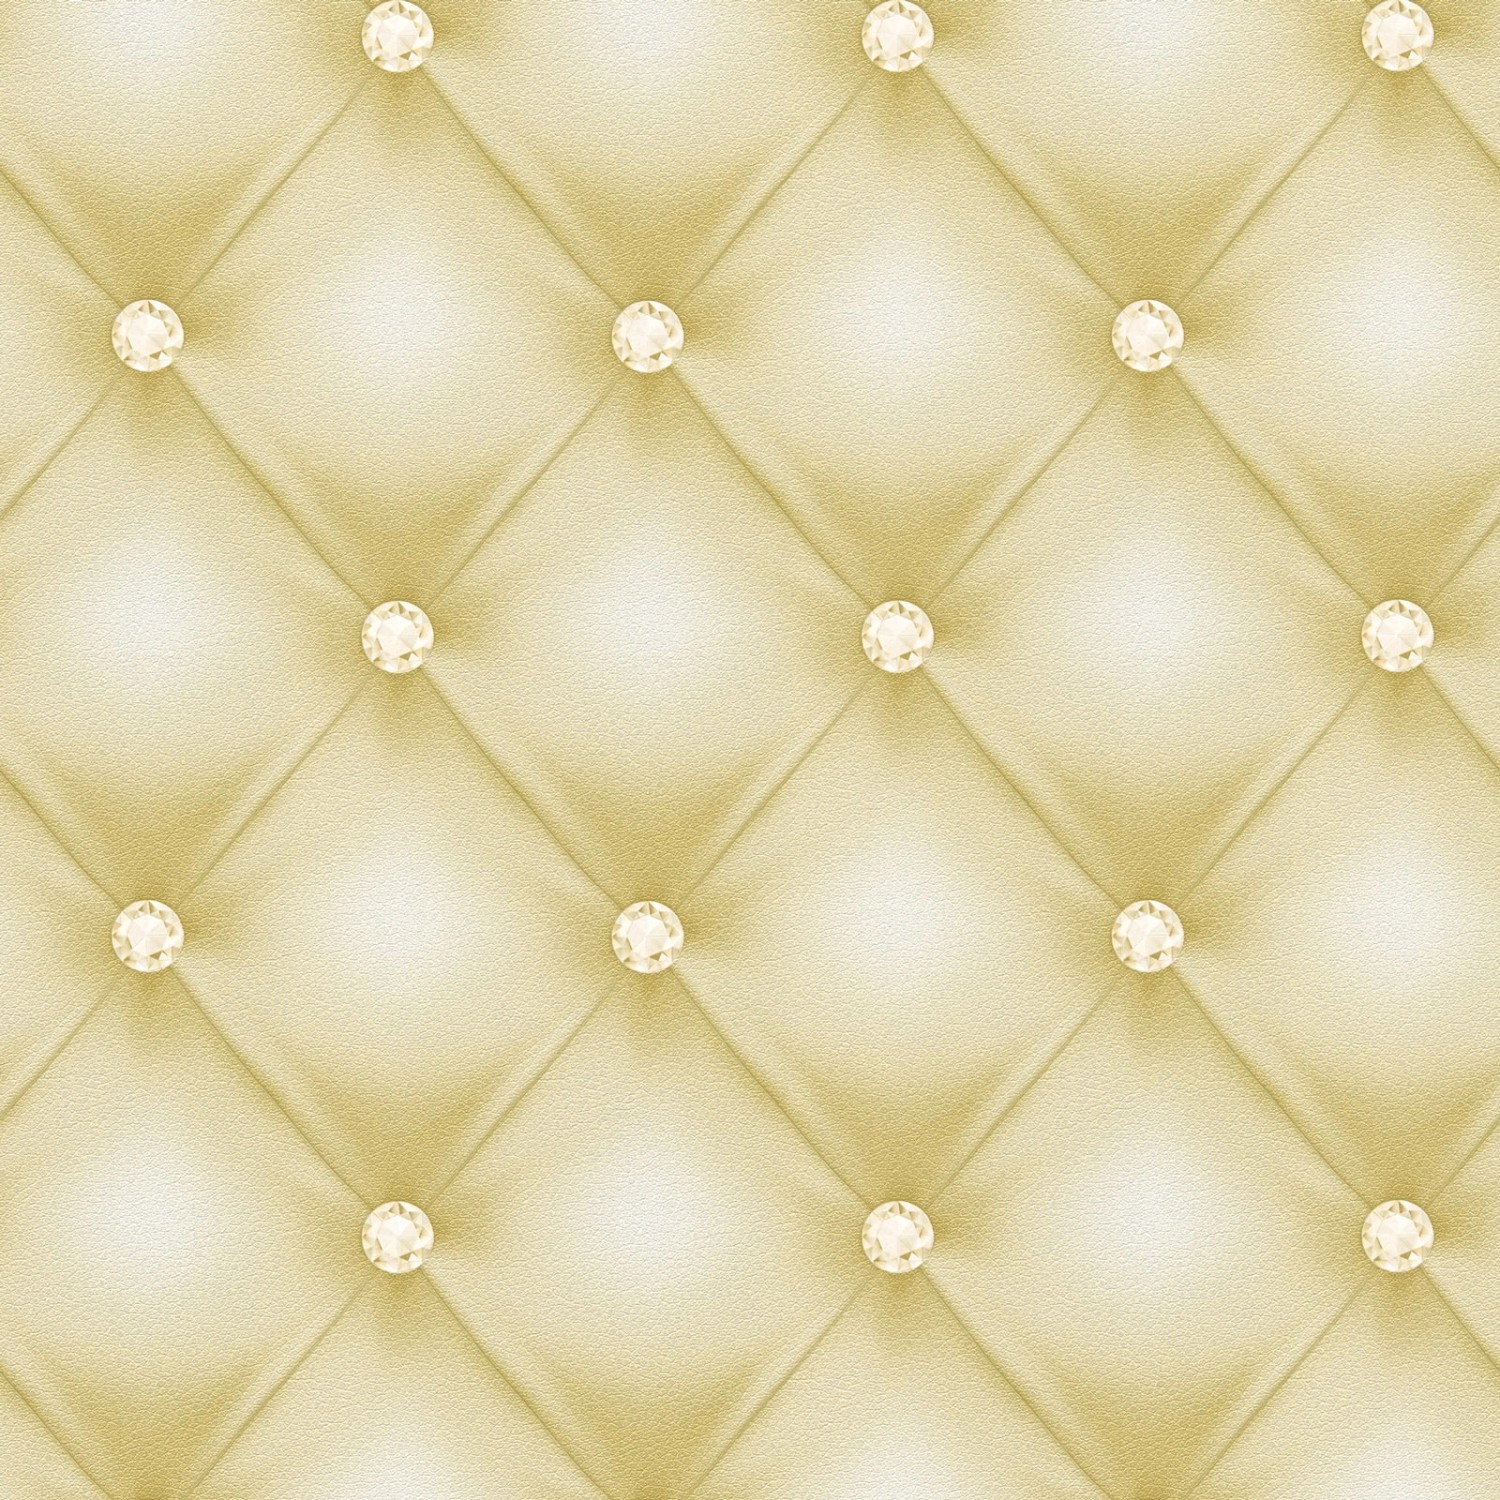 Bricoflor Goldene Tapete in Lederoptik Polster Vliestapete in Gold mit Glitzersteinen Opulent ausgefallene Chesterfield 